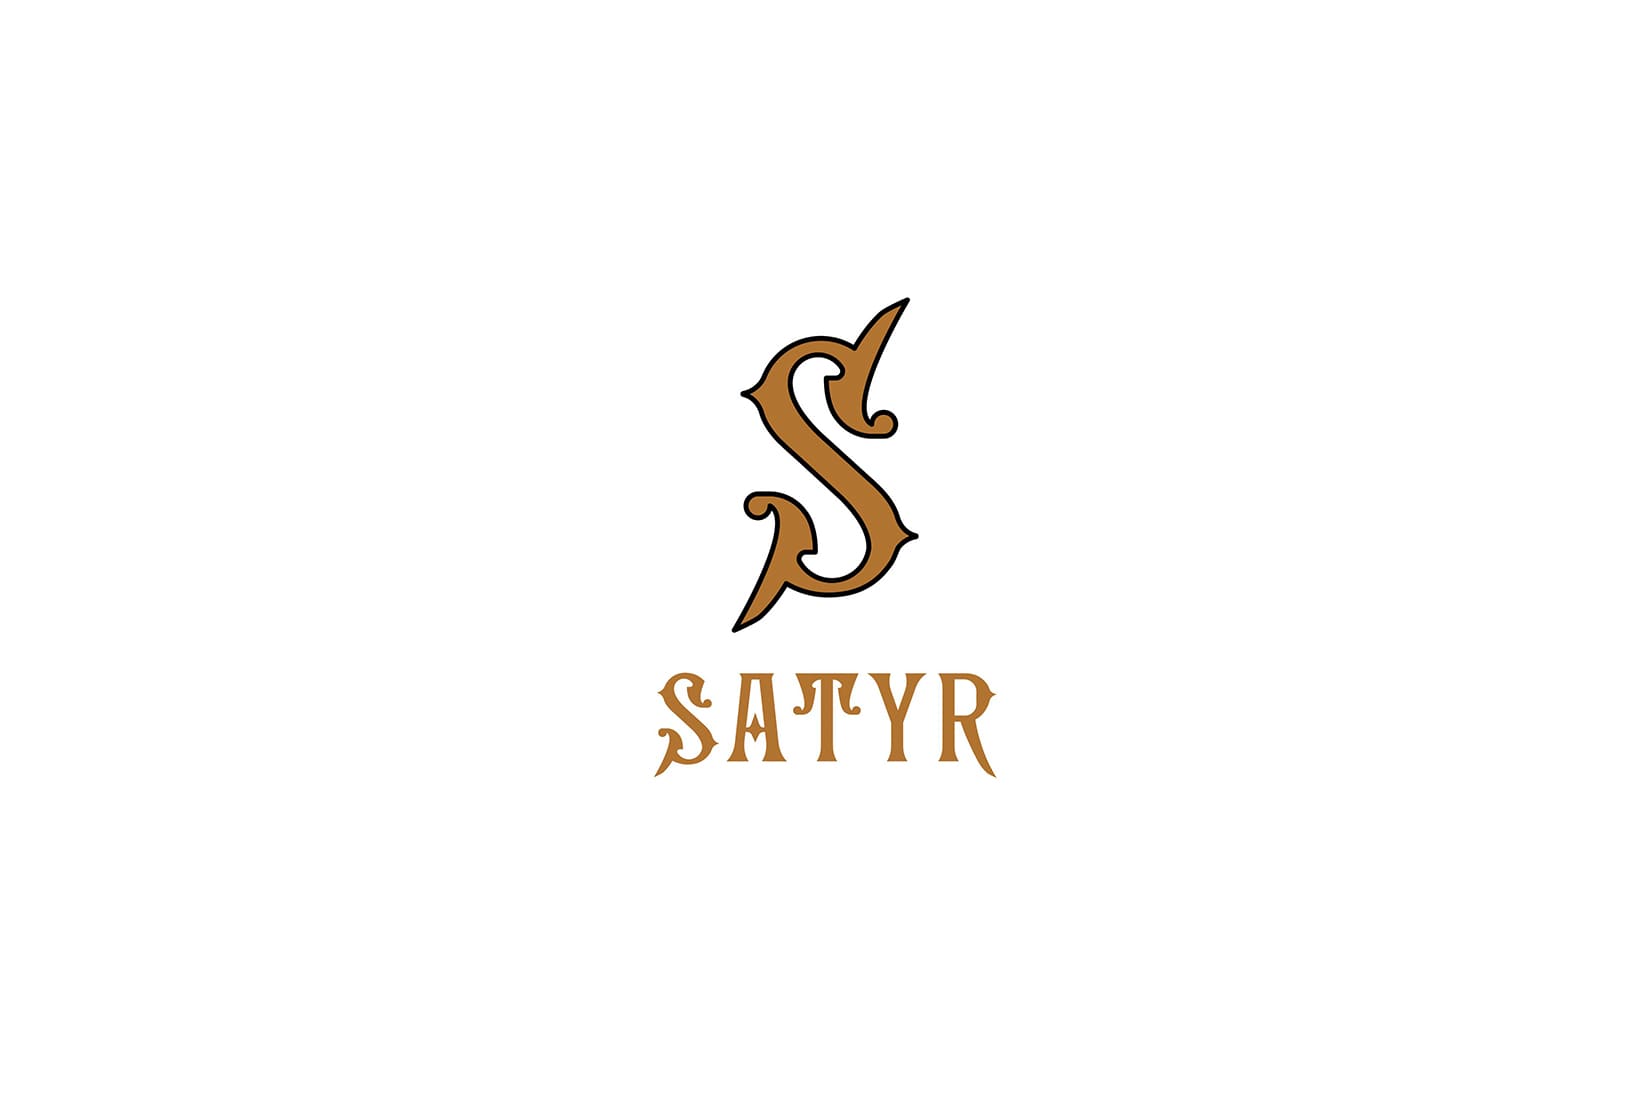 Табак для кальяна Satyr: описание, вкусы, миксы, отзывы